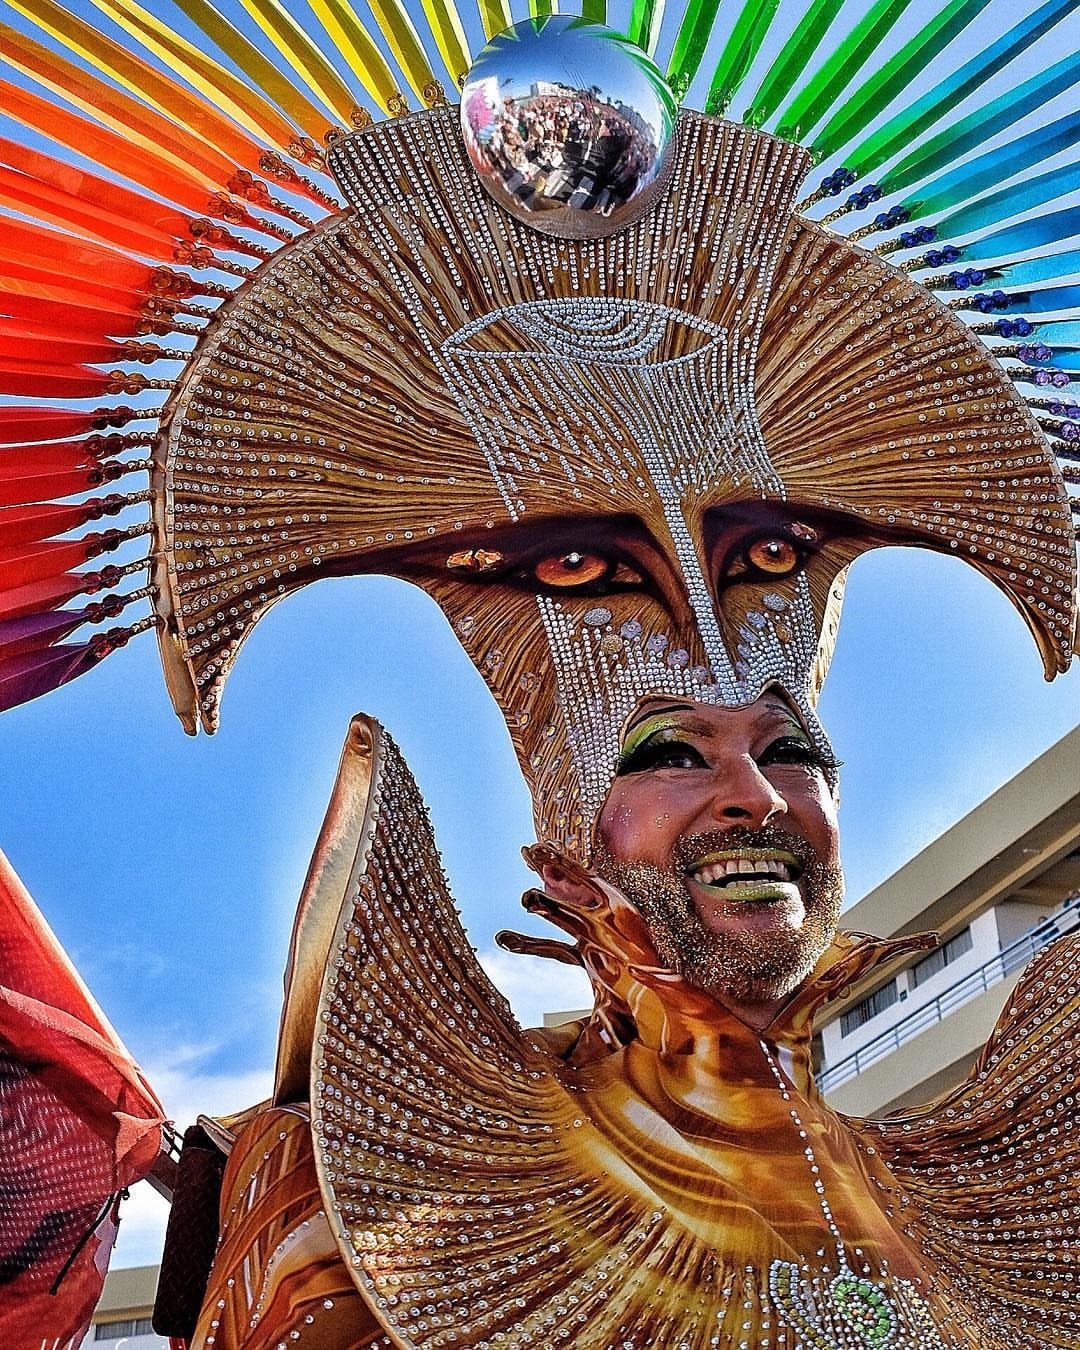 Drag Ybridex, Fred et notre Roger photographe createur 
                  ;-))) Carnaval Sitges 2018